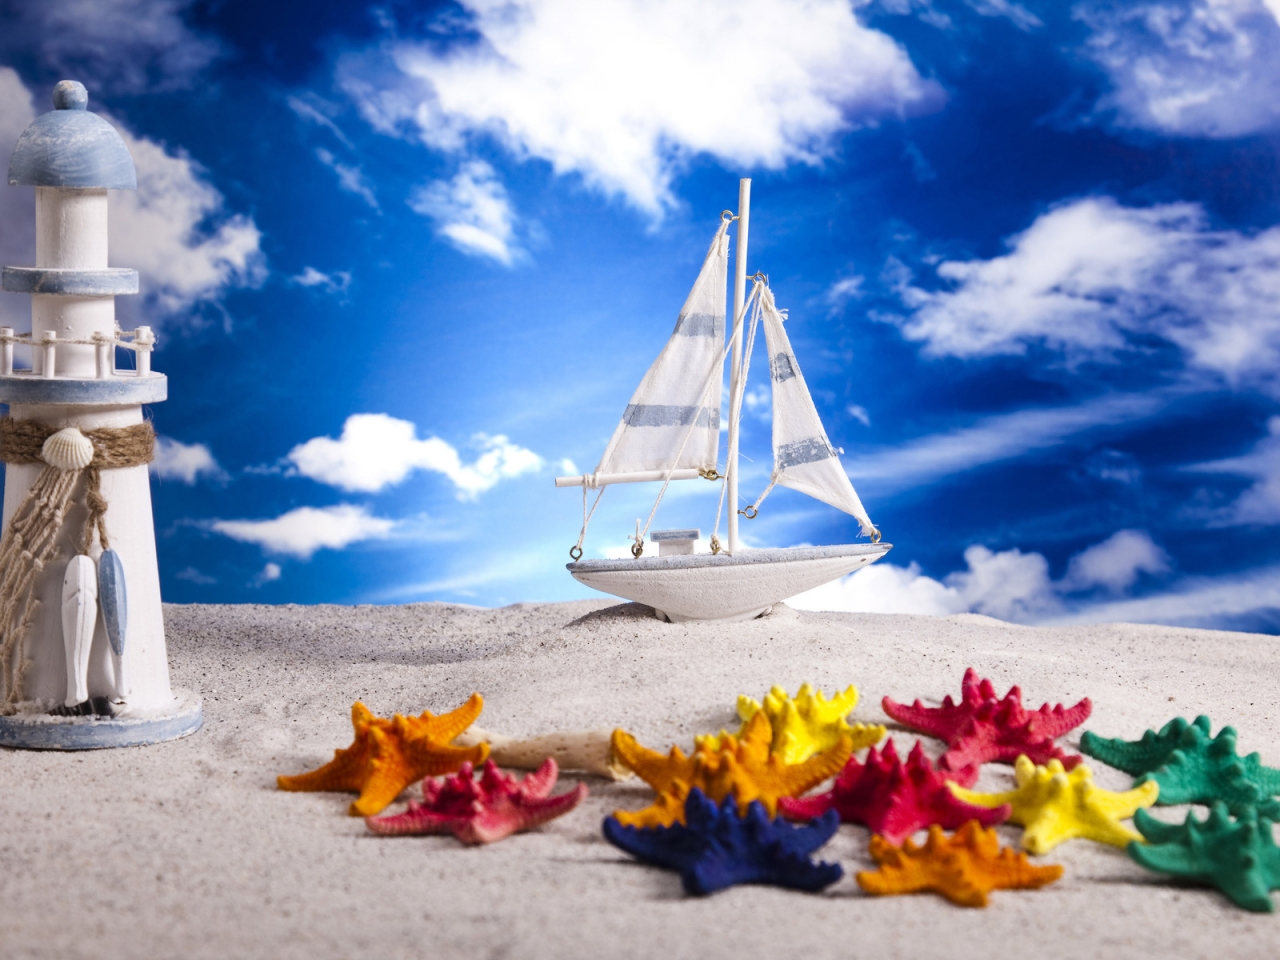 Summer Beach Miniature for 1280 x 960 resolution